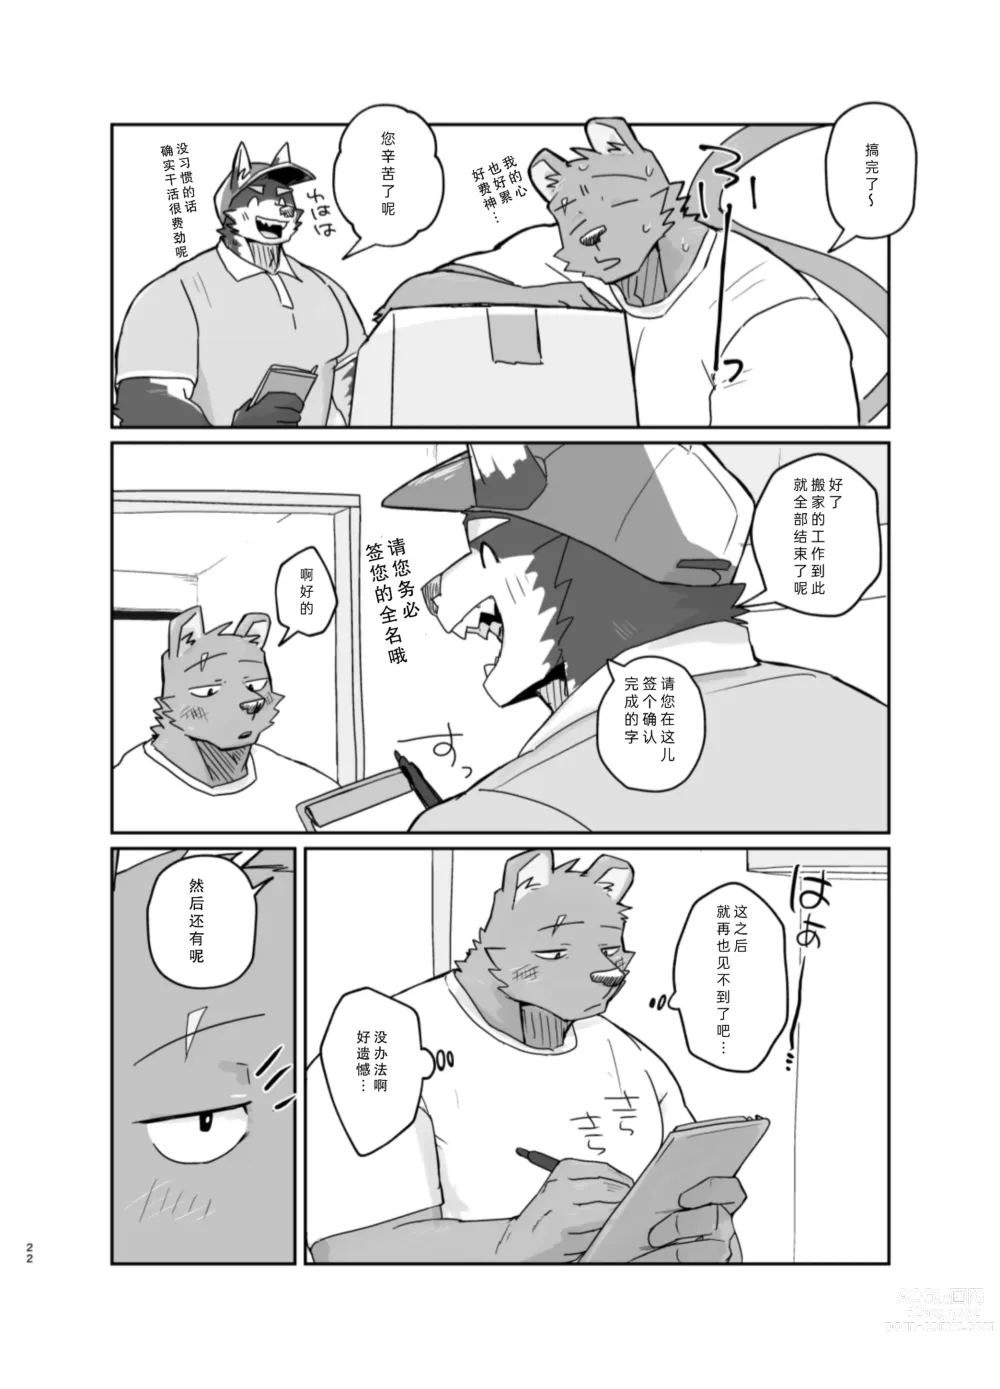 Page 22 of doujinshi 搬家的十分钟服务